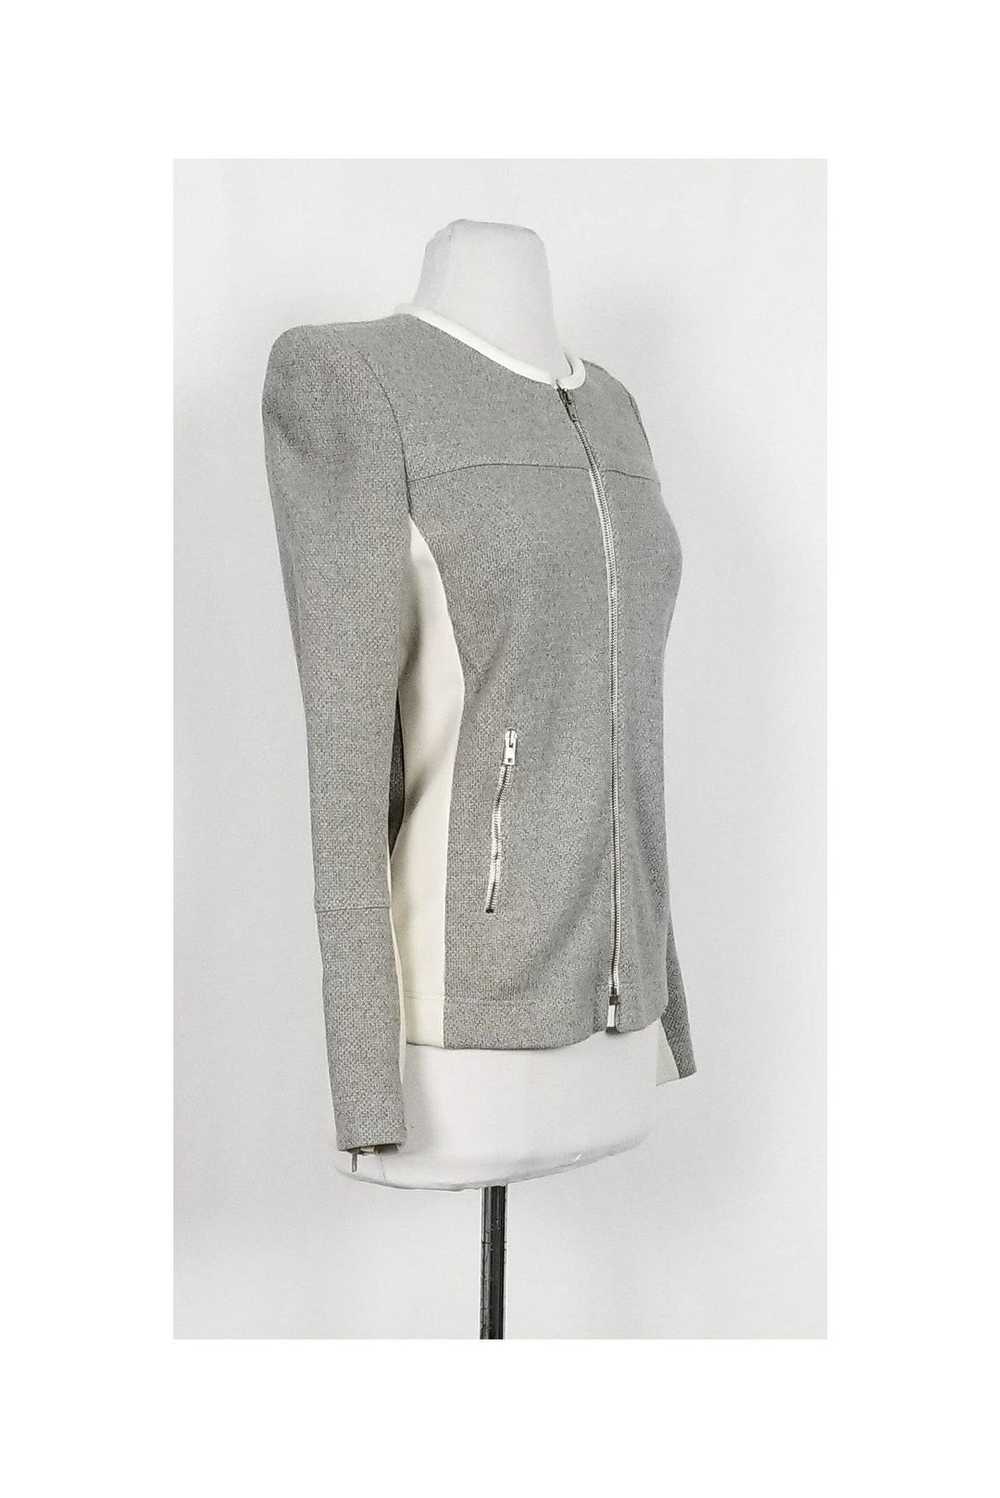 IRO - Grey Knit Jacket w/ Cream Trim Sz 8 - image 2